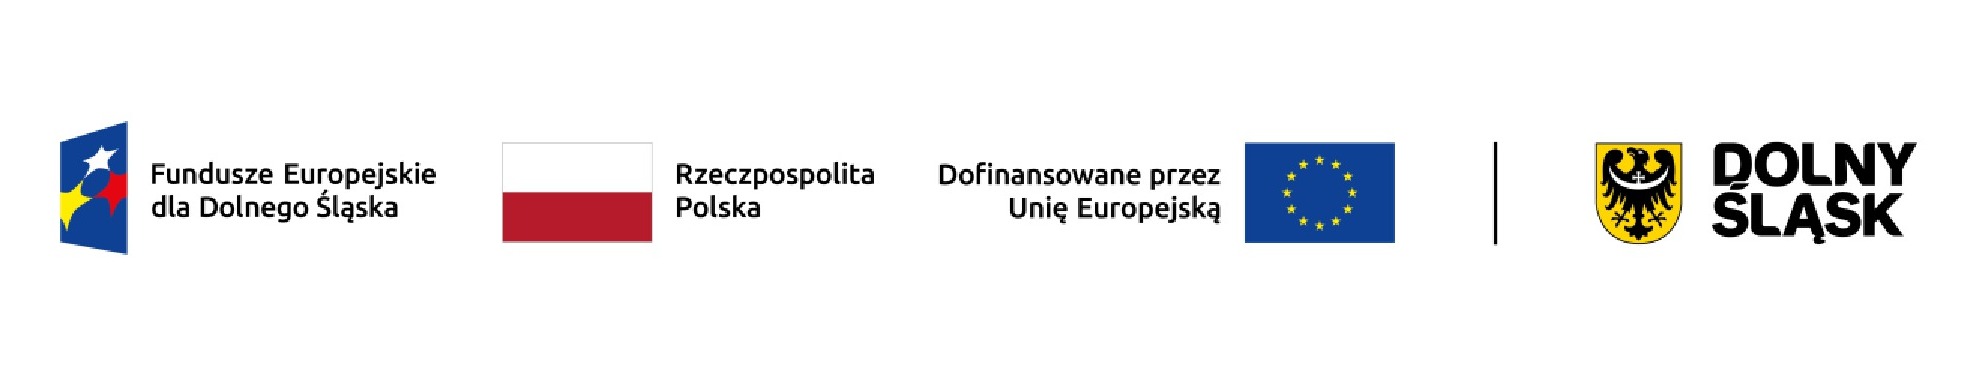 slider.alt.head Informacja o realizacji projektu finansowanego w ramach Programu Fundusze Europejskie dla Dolnego Śląska